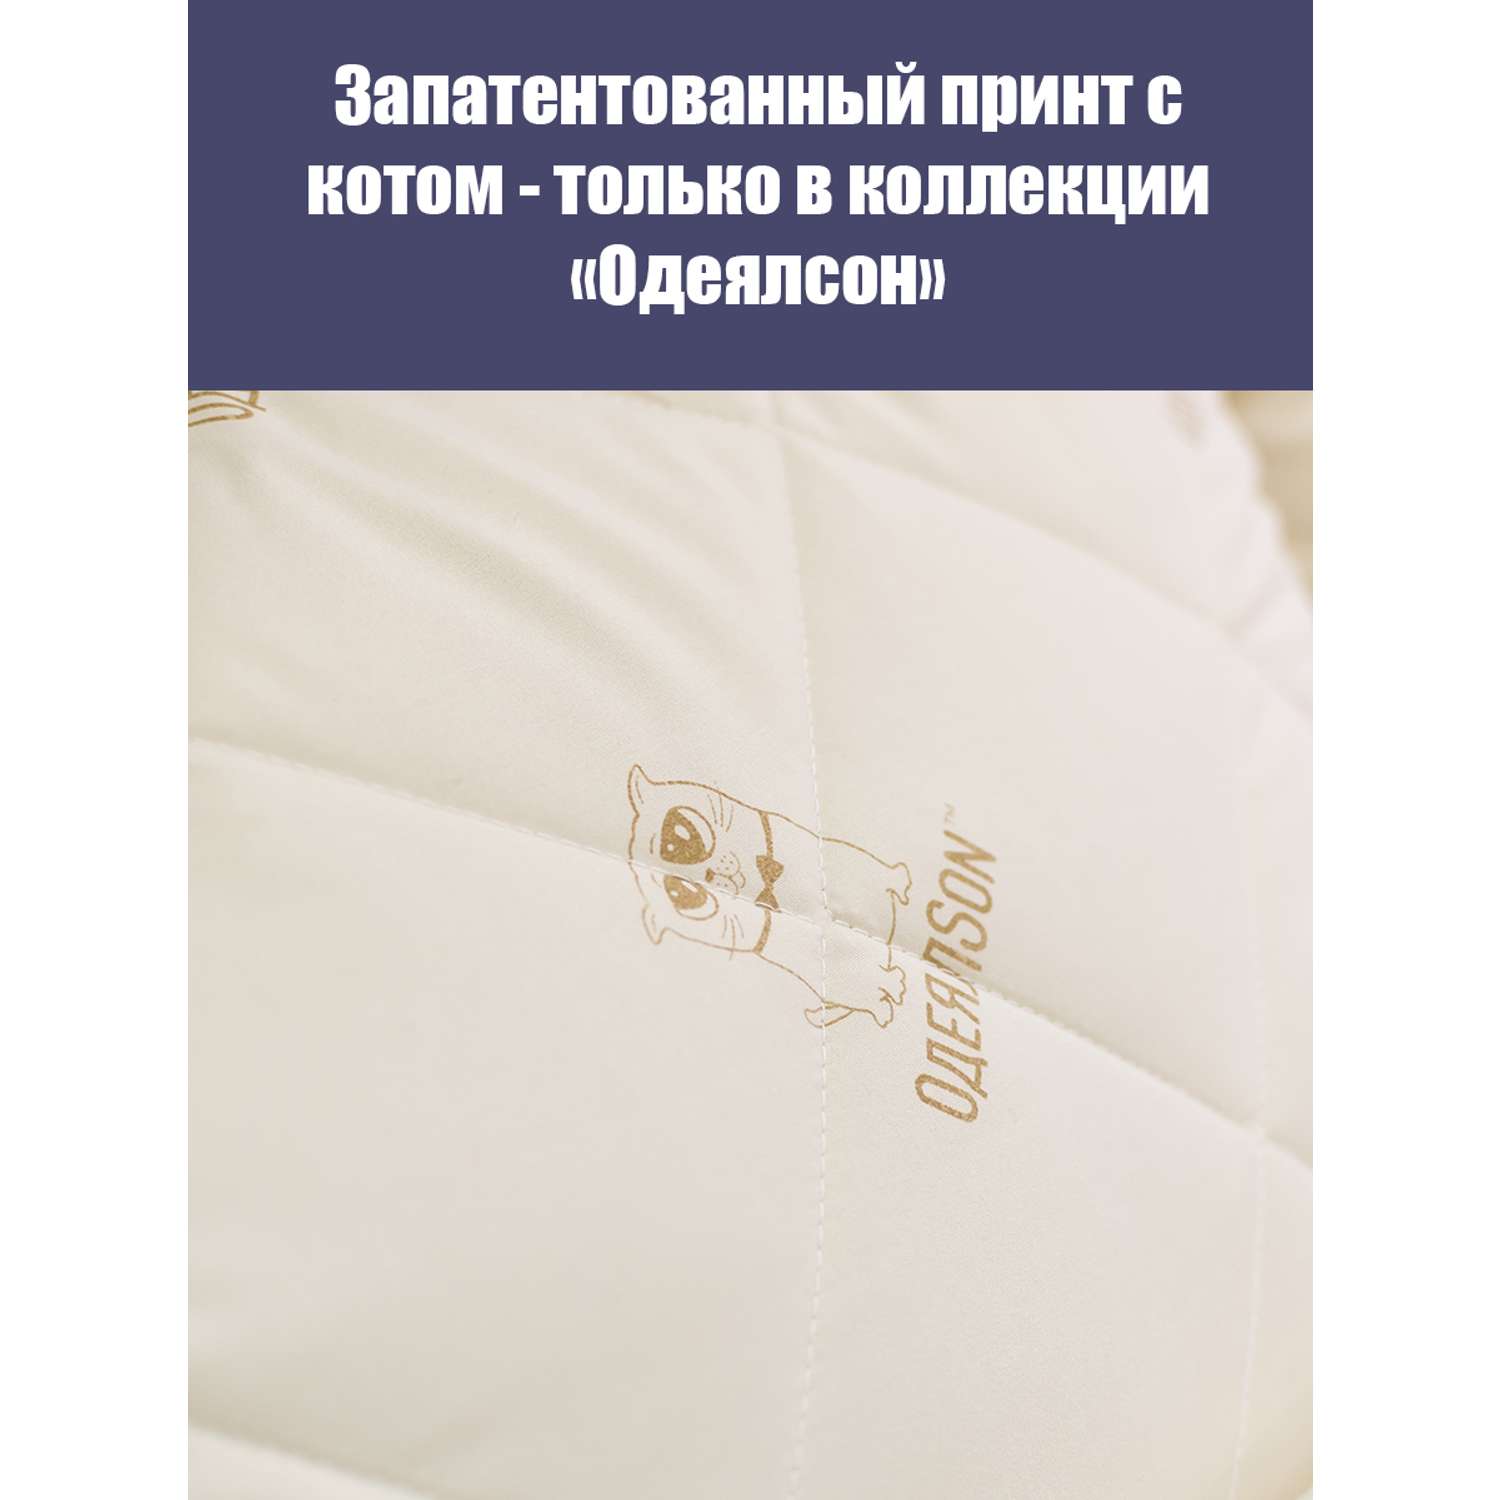 Подушка Мягкий сон одеялсон 70x70 см - фото 2